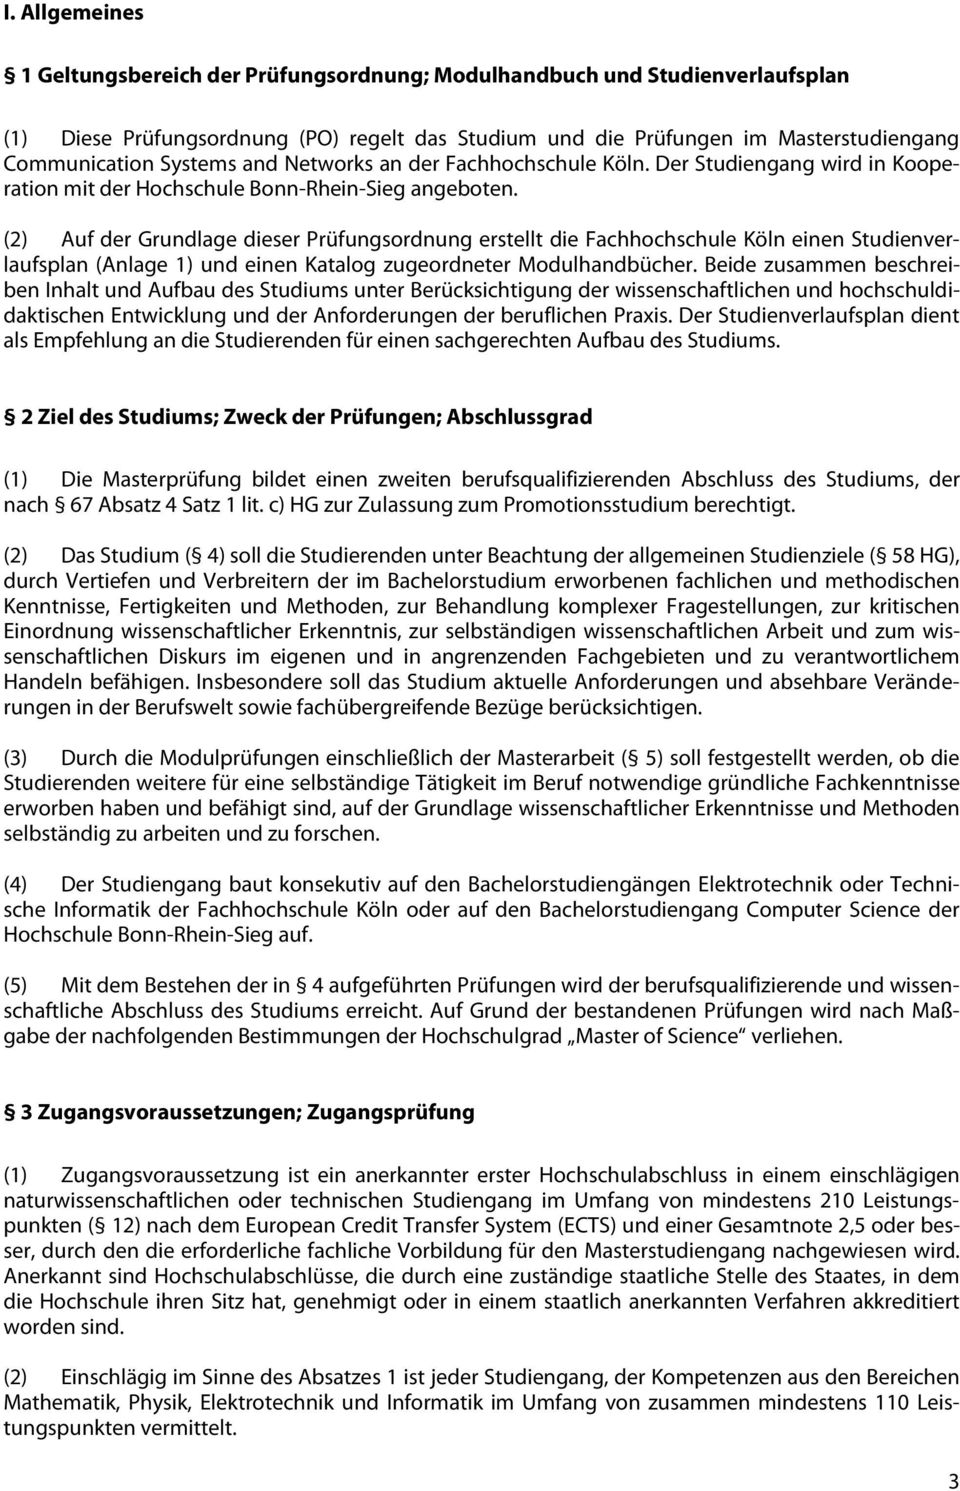 (2) Auf der Grundlage dieser Prüfungsordnung erstellt die Fachhochschule Köln einen Studienverlaufsplan (Anlage 1) und einen Katalog zugeordneter Modulhandbücher.